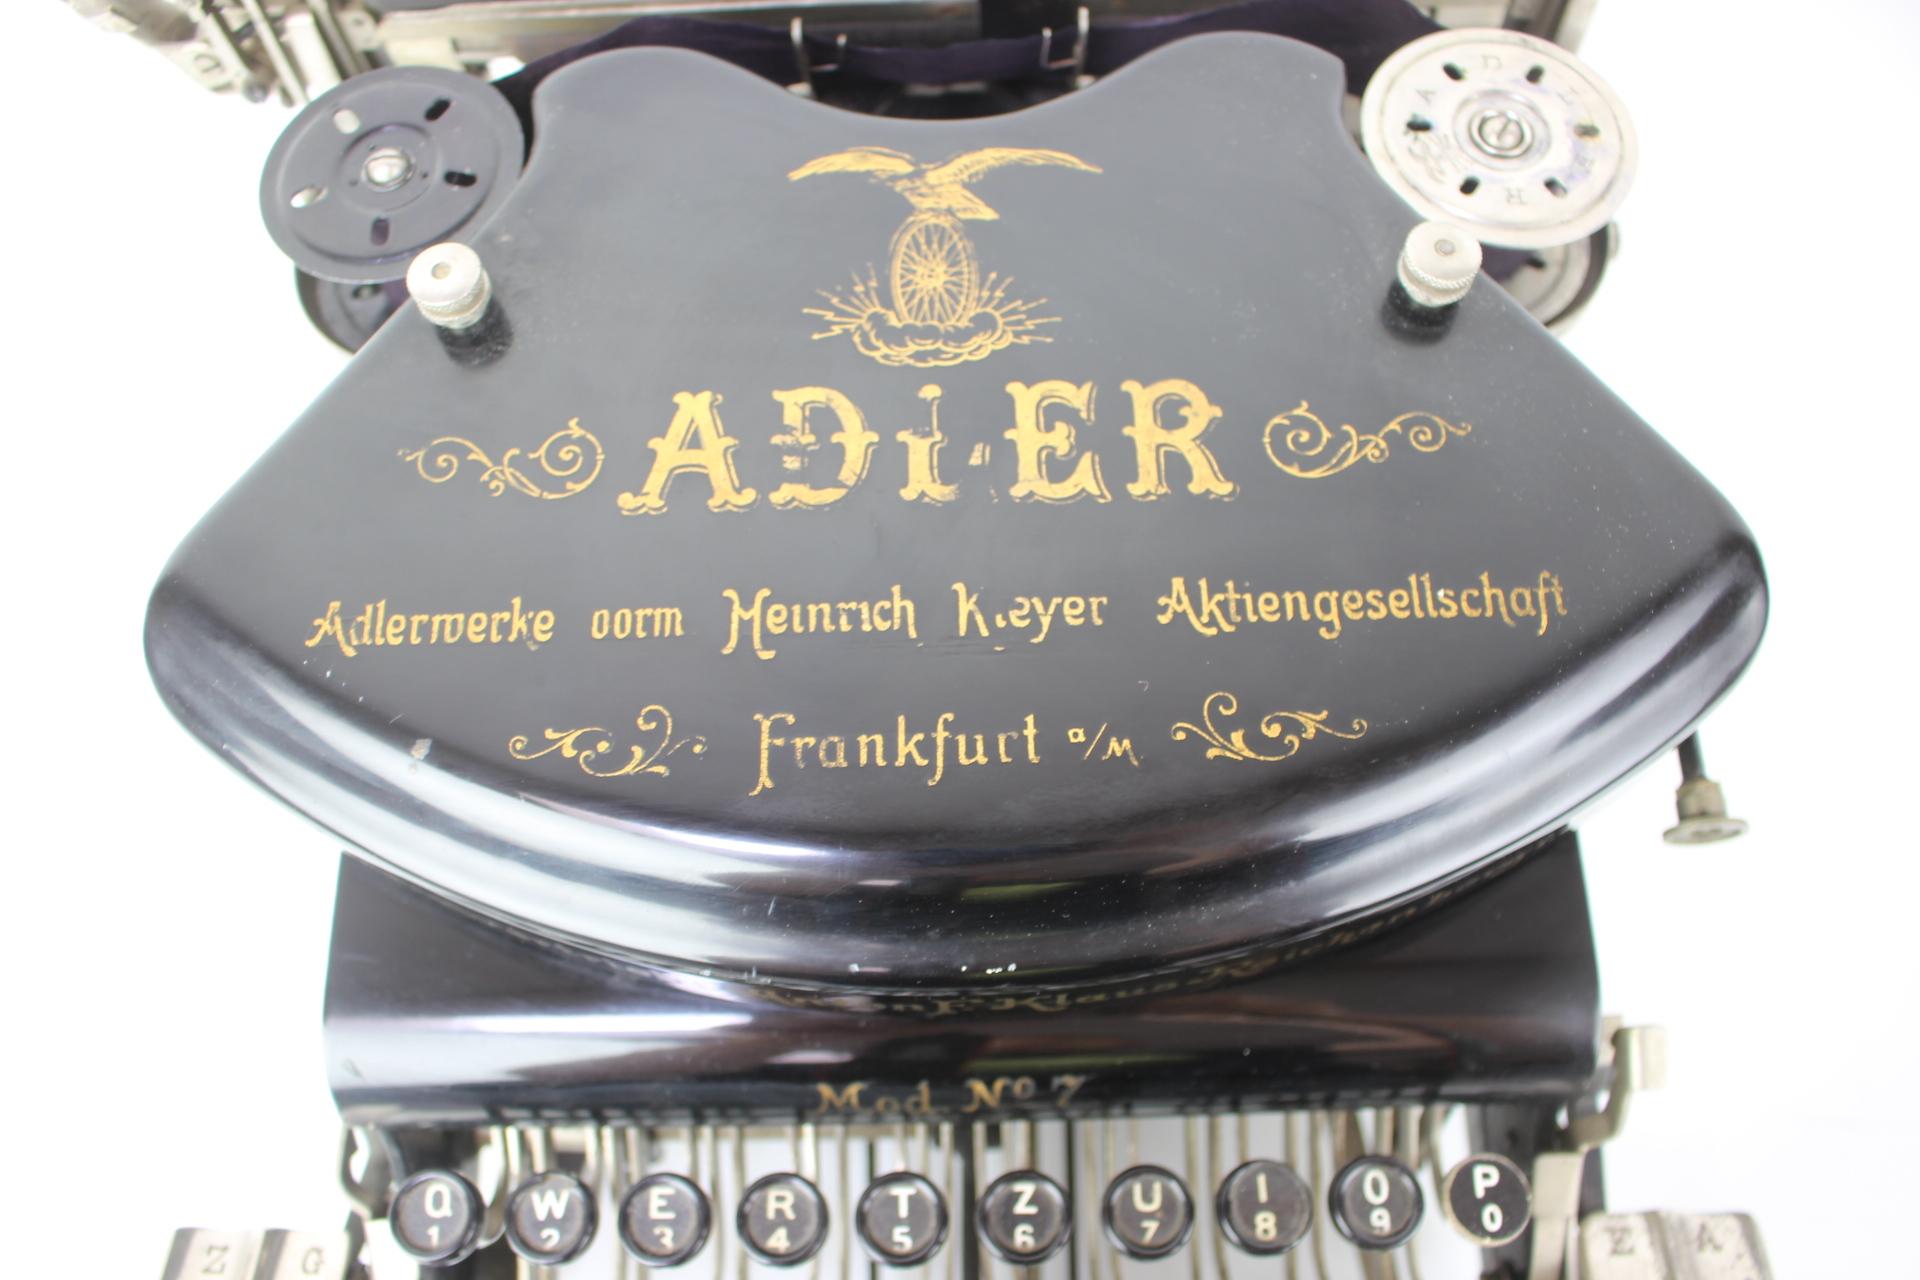 1900 typewriter